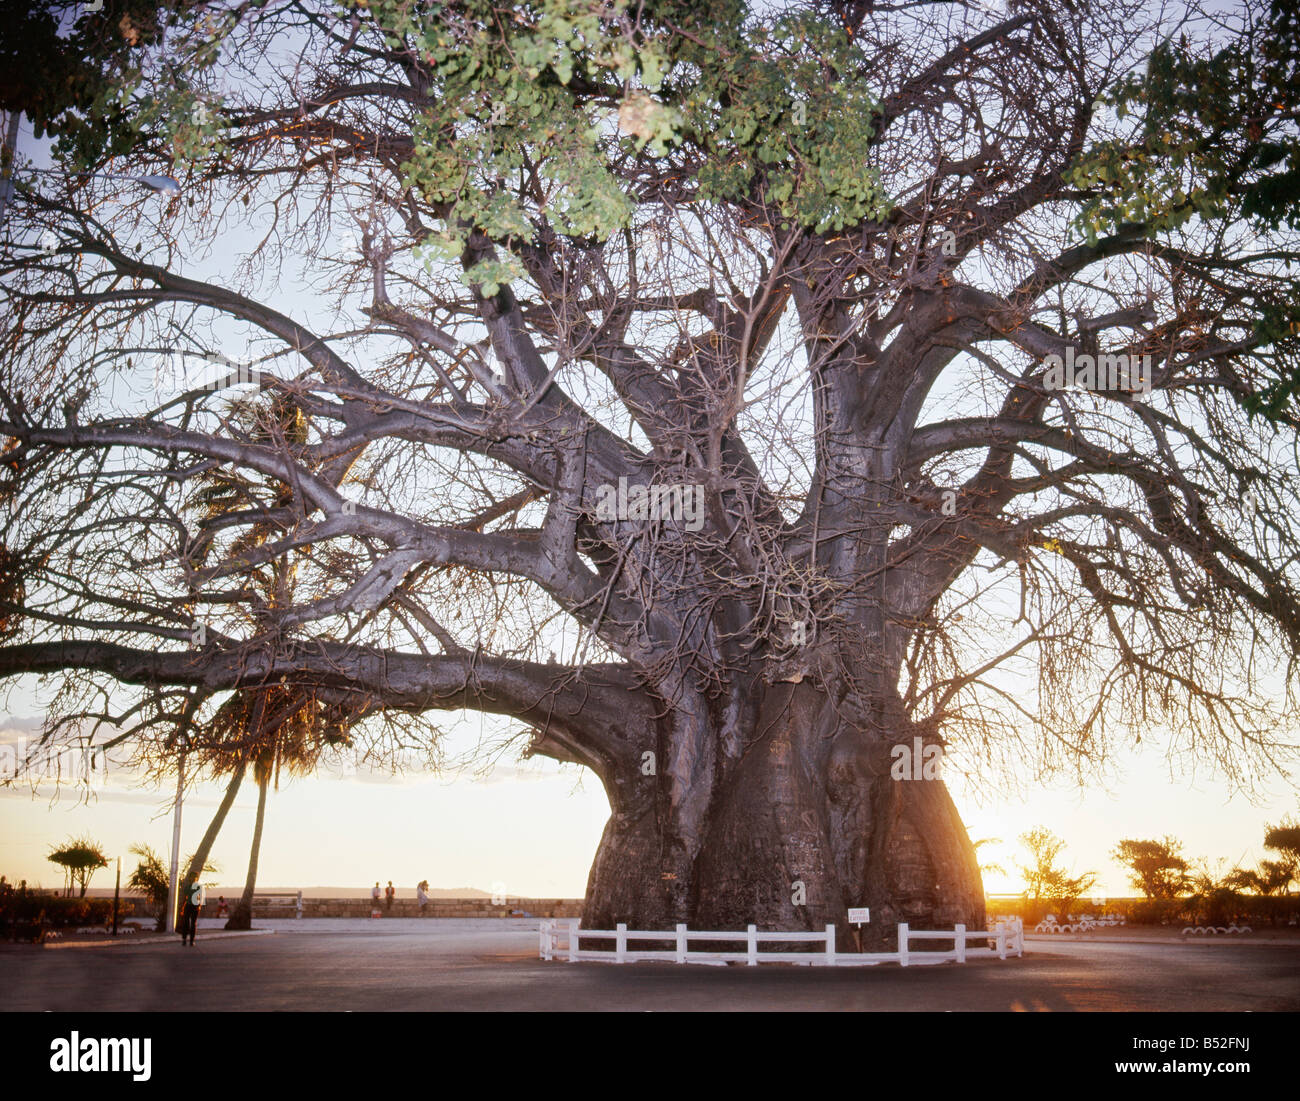 Le baobab emblême de Majunga celèbre est par sa circonférence exeptionnelle de 21 70m à 1m du sol sa hauteur ne dépasse guère 10 Foto Stock